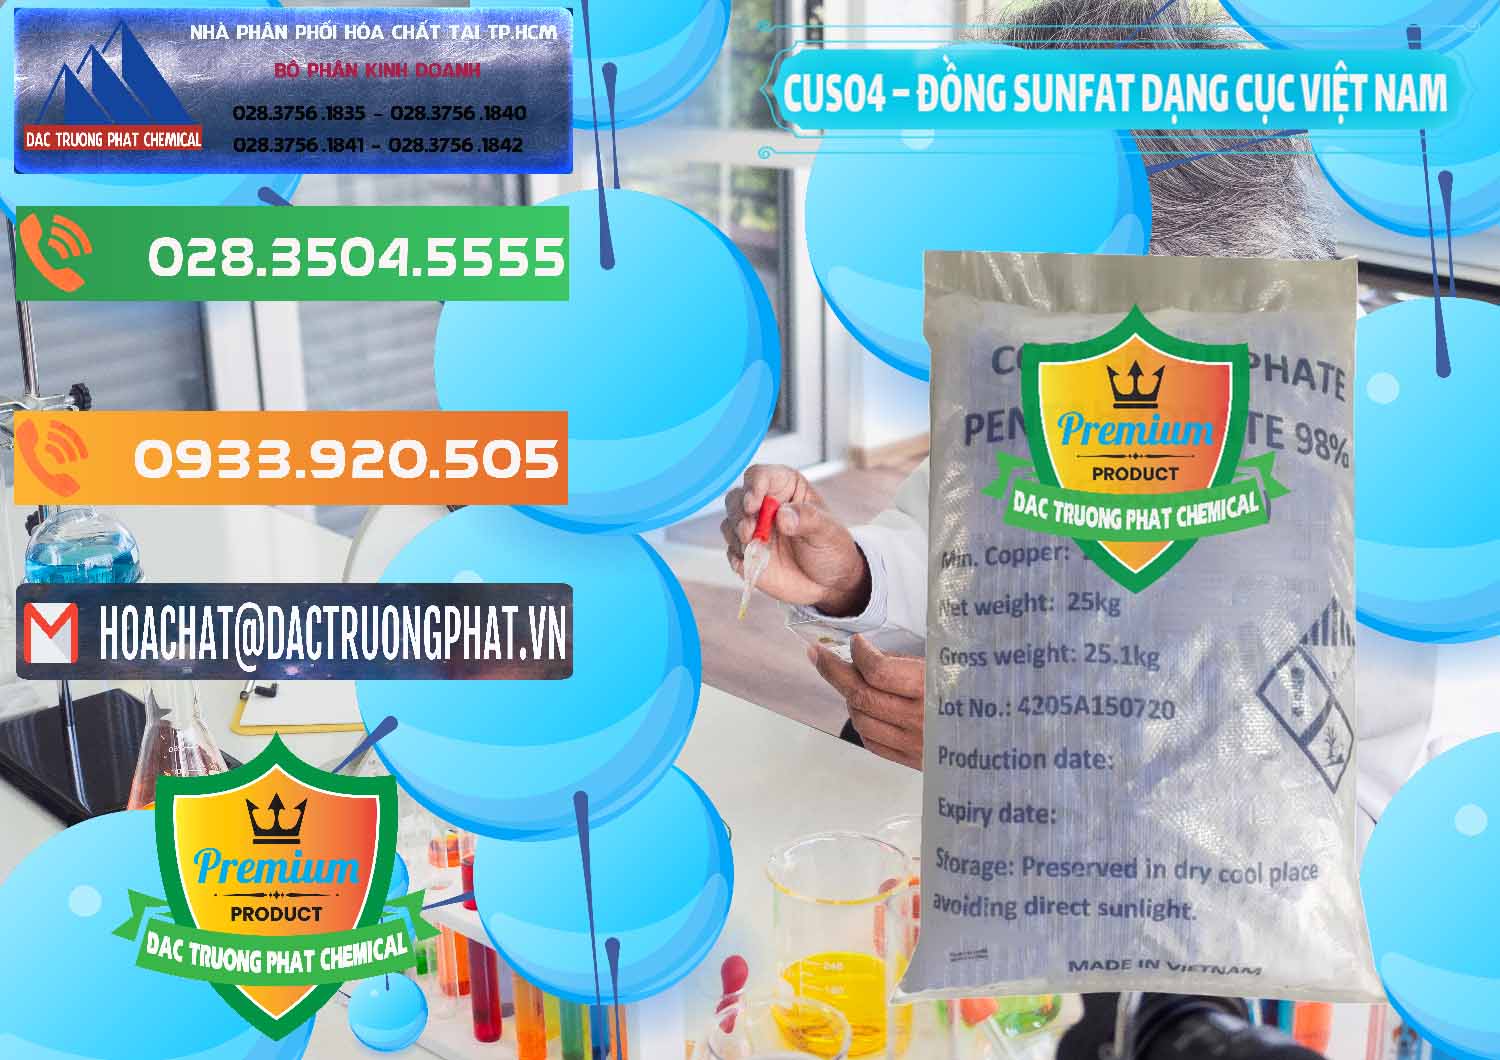 Phân phối ( kinh doanh ) CUSO4 – Đồng Sunfat Dạng Cục Việt Nam - 0303 - Kinh doanh - cung cấp hóa chất tại TP.HCM - hoachatxulynuoc.com.vn